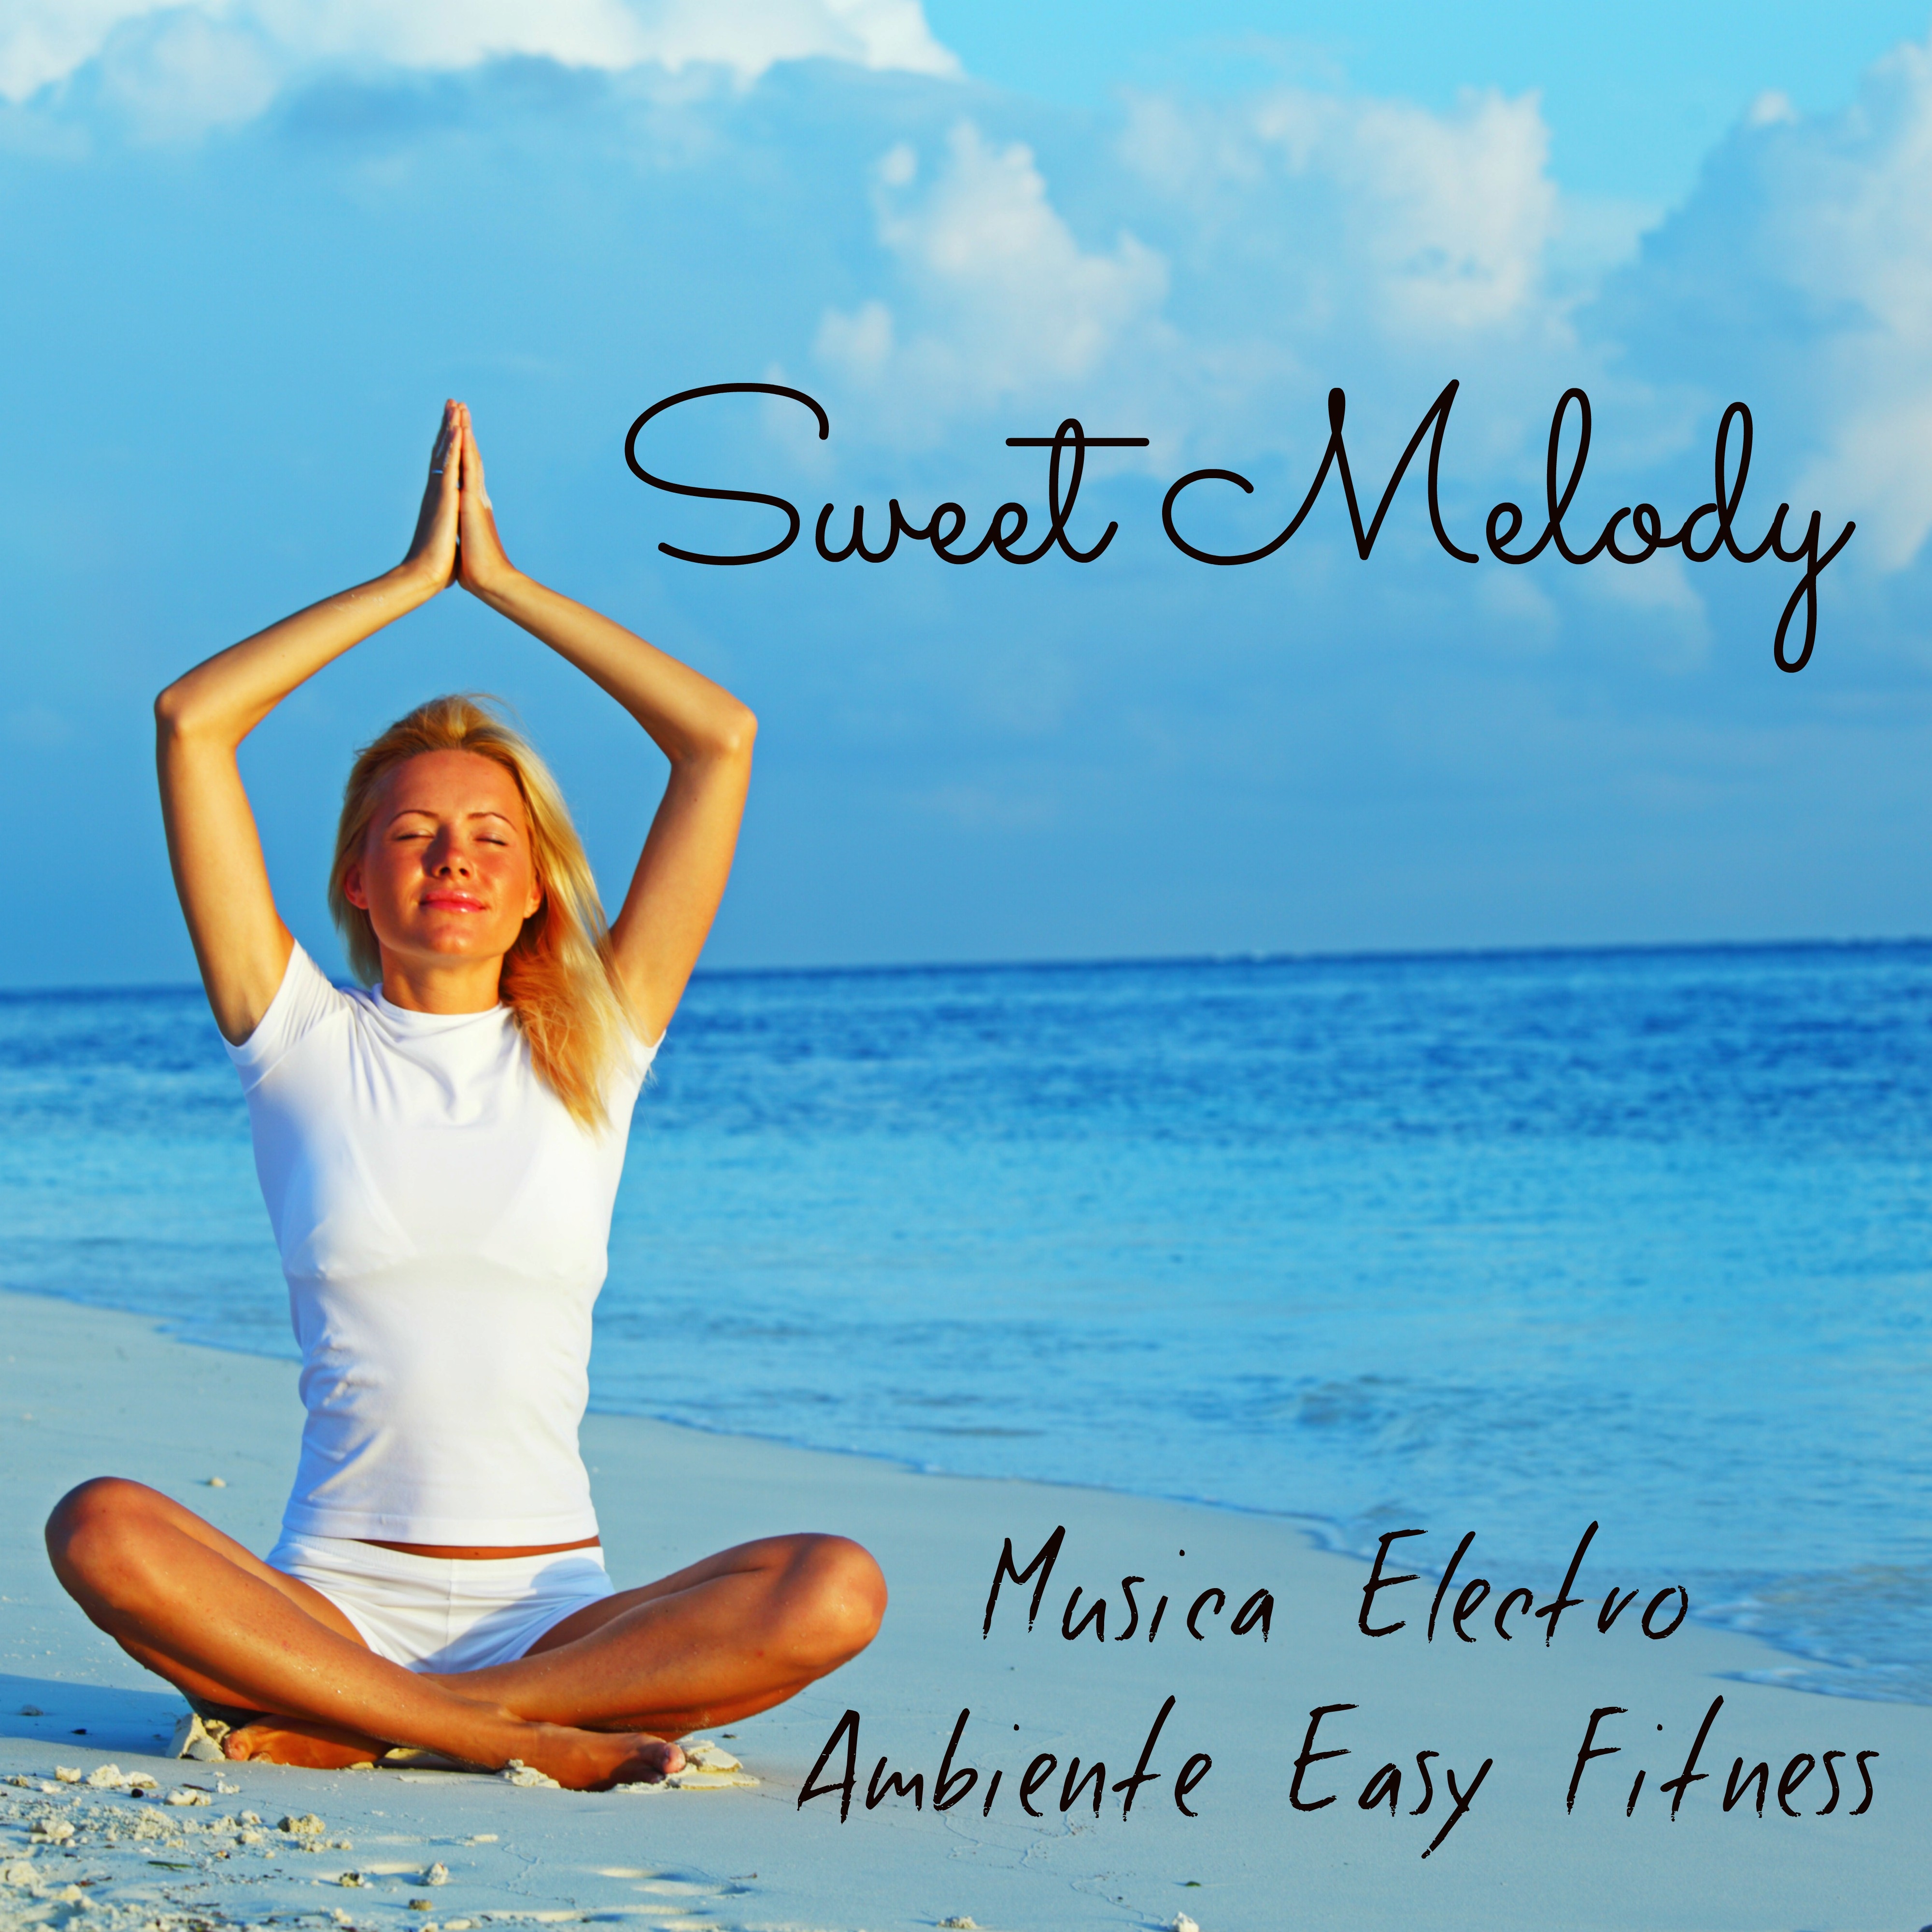 Sweet Melody - Musica Electro Ambiente Easy Fitness con Suoni dalla Natura Rilassanti e Strumentali